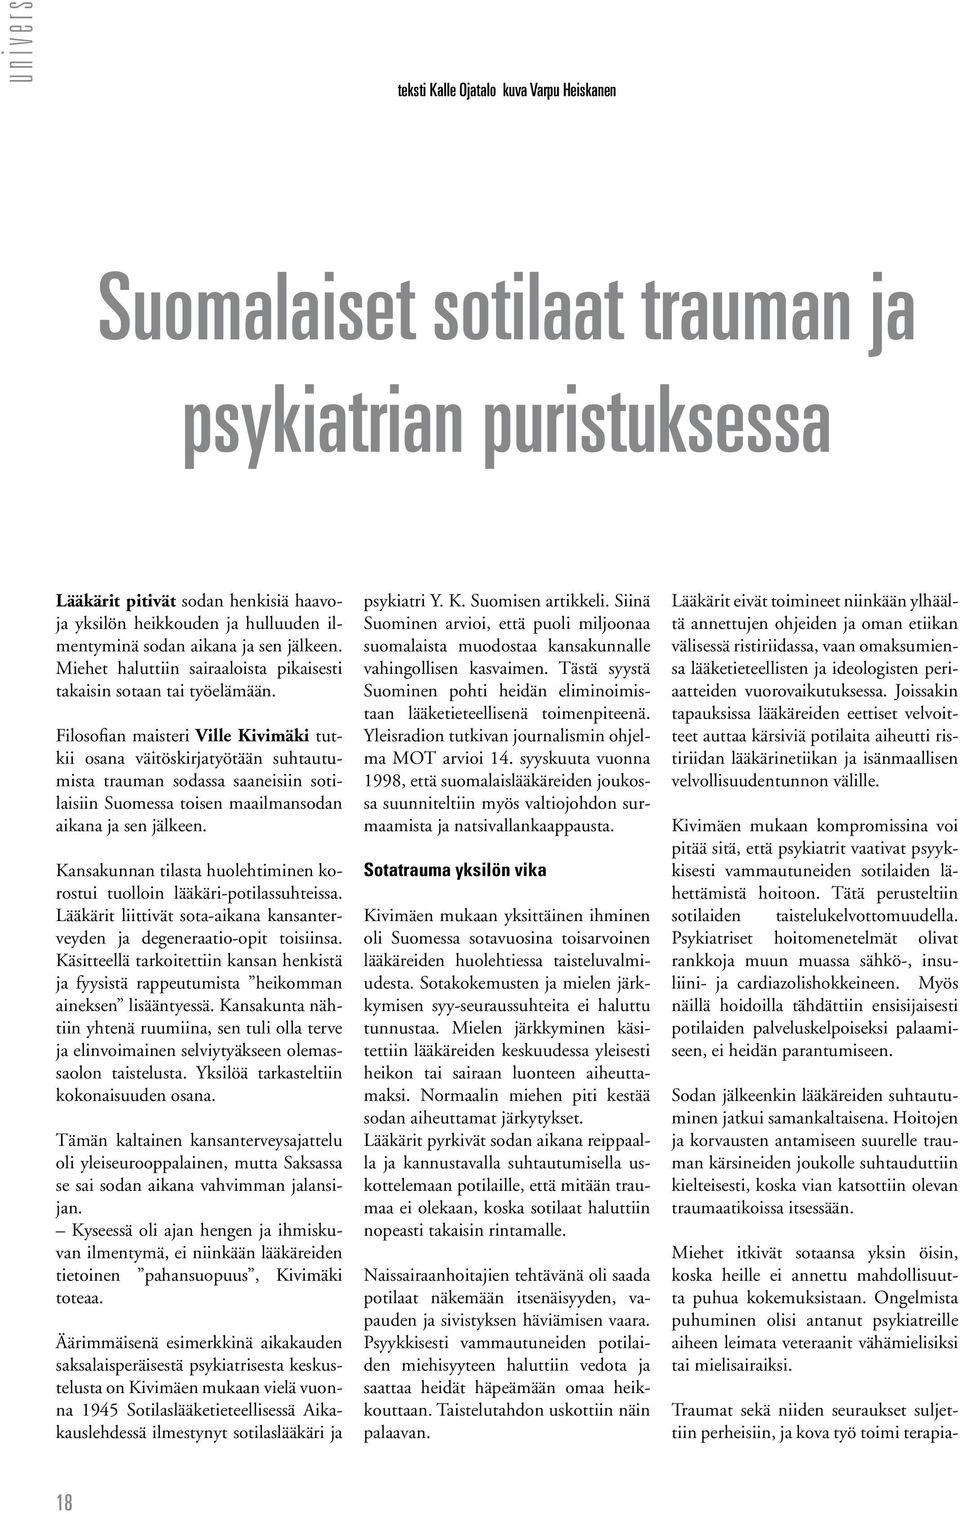 Filosofian maisteri Ville Kivimäki tutkii osana väitöskirjatyötään suhtautumista trauman sodassa saaneisiin sotilaisiin Suomessa toisen maailmansodan aikana ja sen jälkeen.